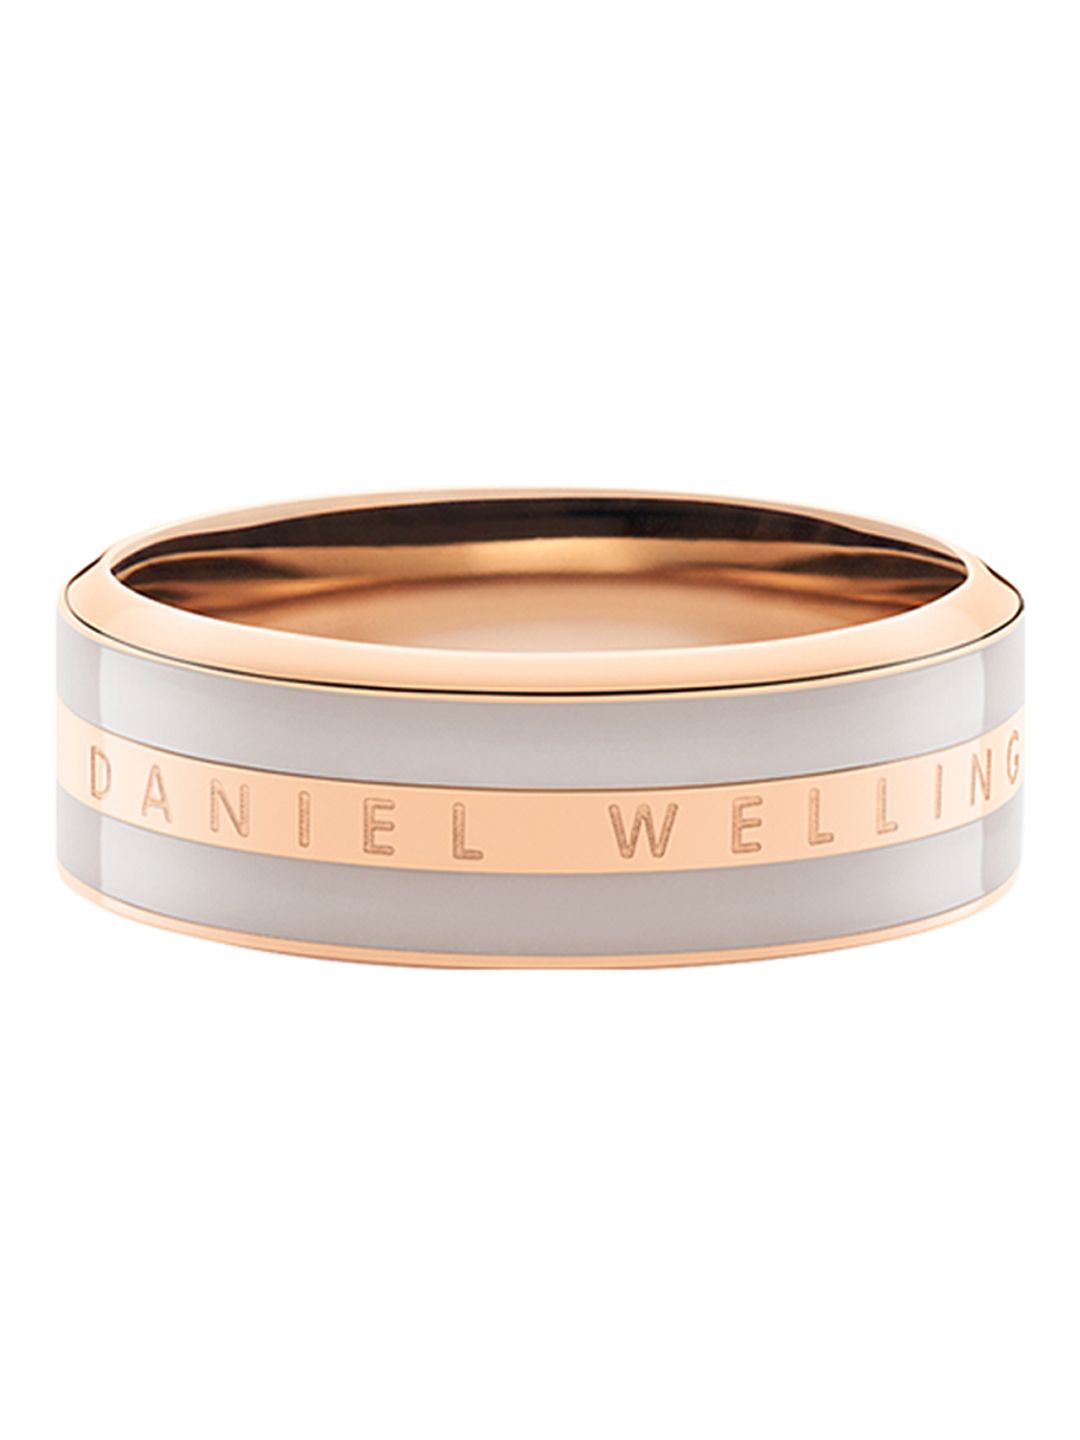 Daniel wellington Unisex Classic Ring Desert Sand Rose Gold DW00400053 Price in India